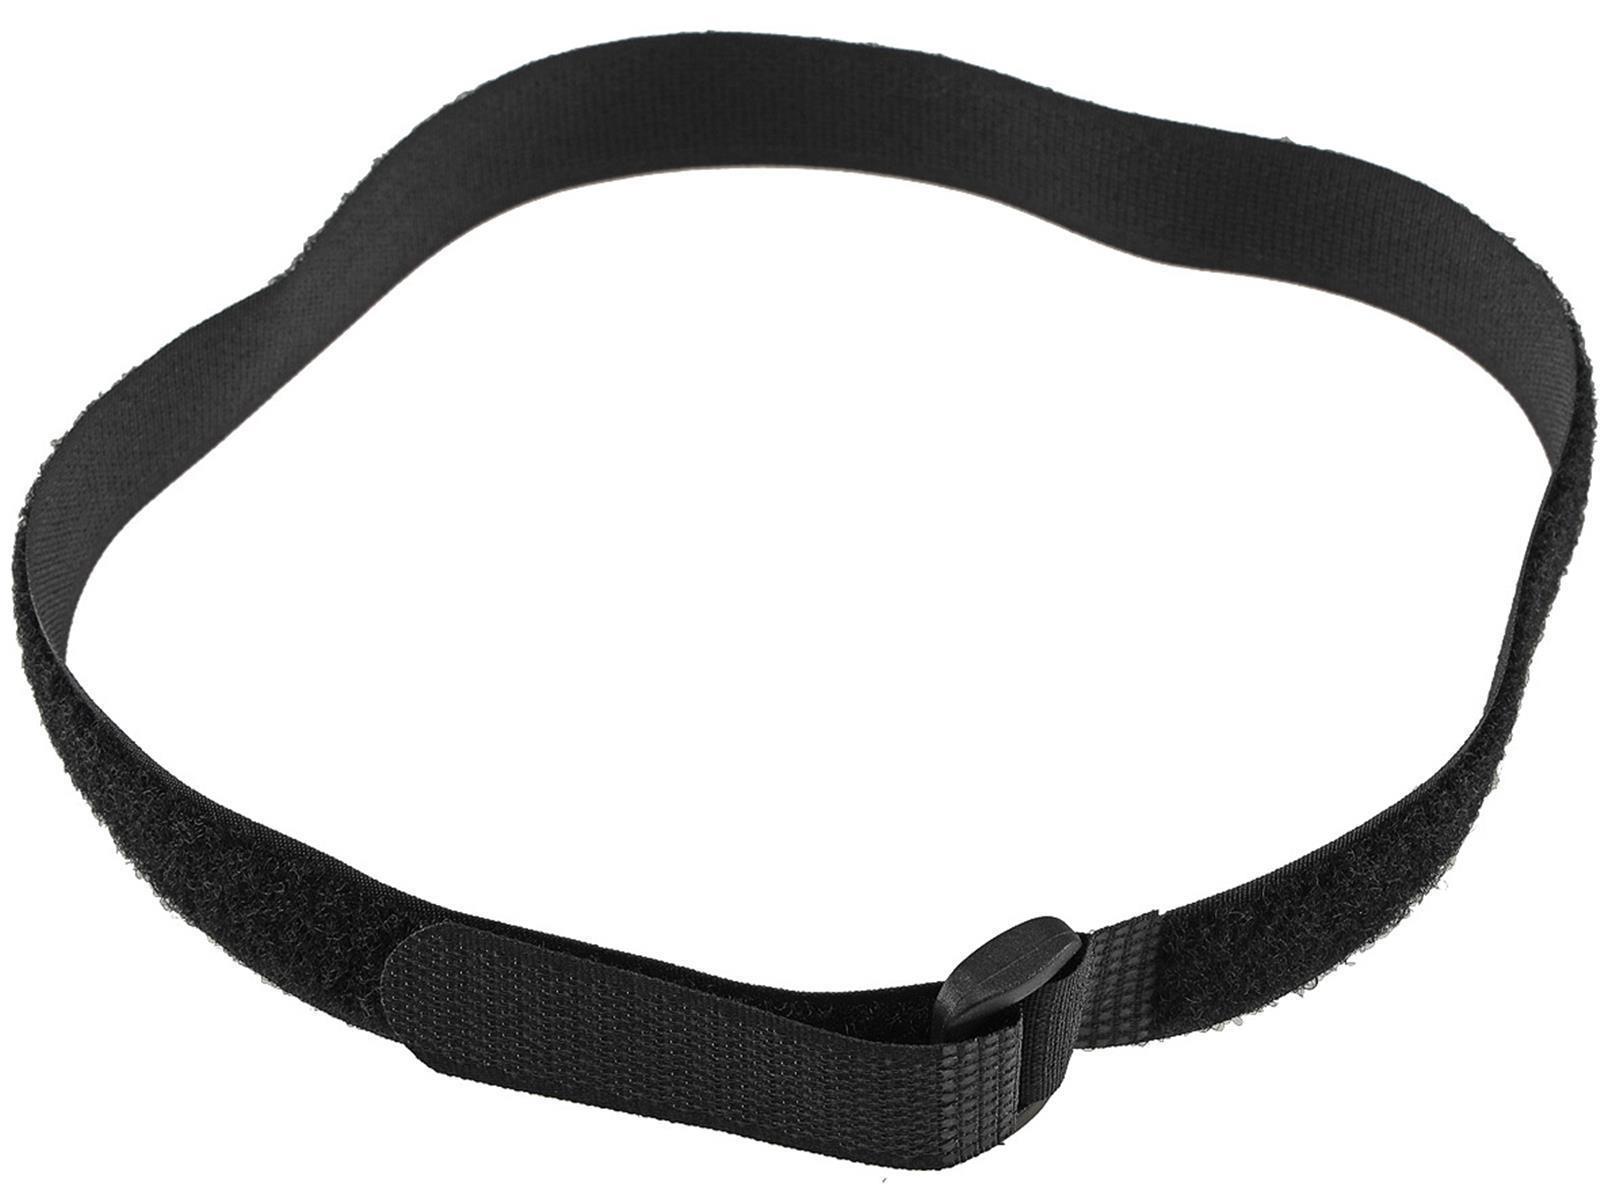 Klettband mit Öse, 5er Pack50x2cm, schwarz